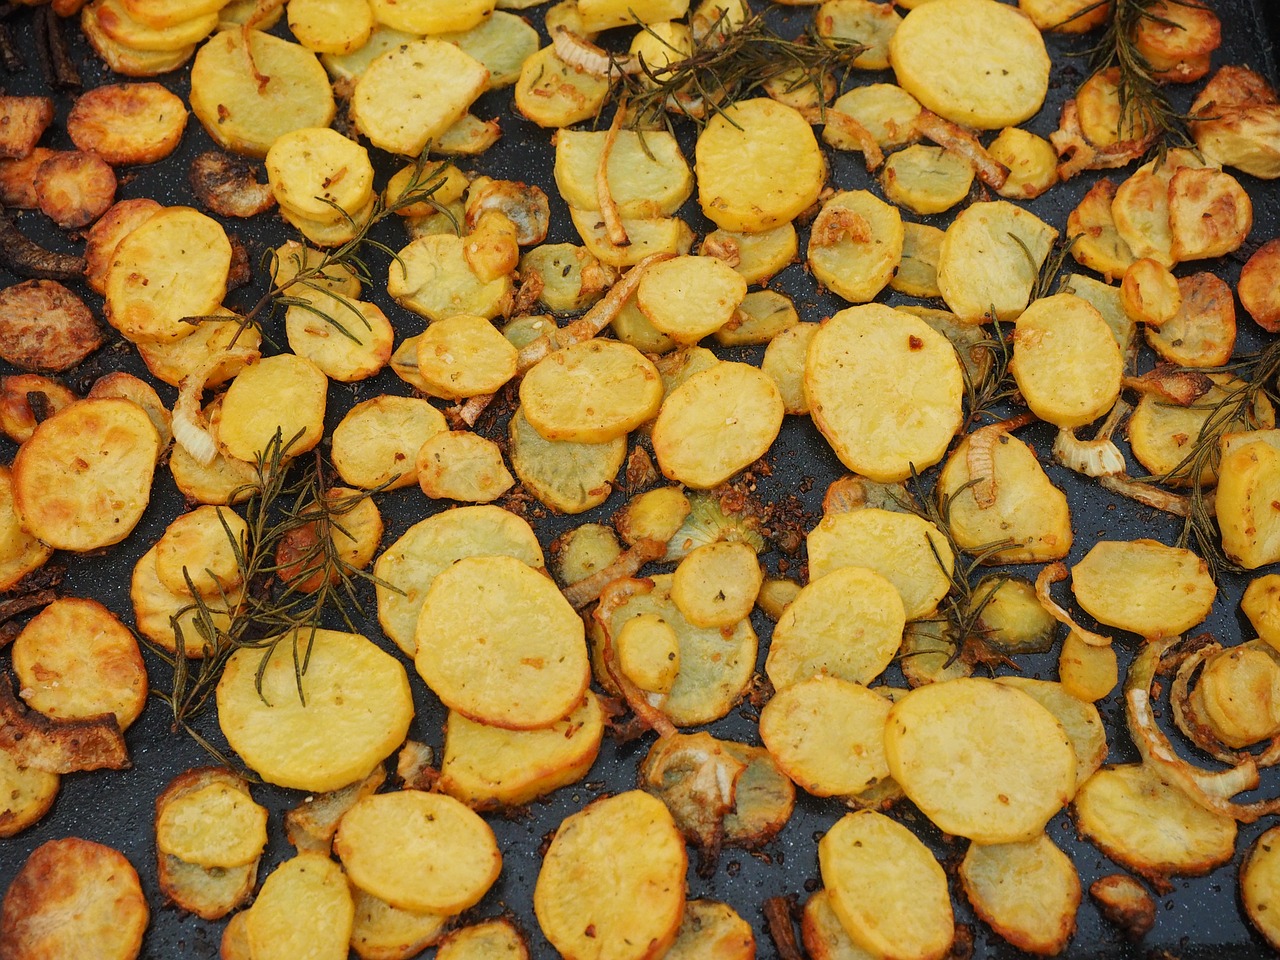 Oven Roasted Honey-Glazed Sweet Potatoes